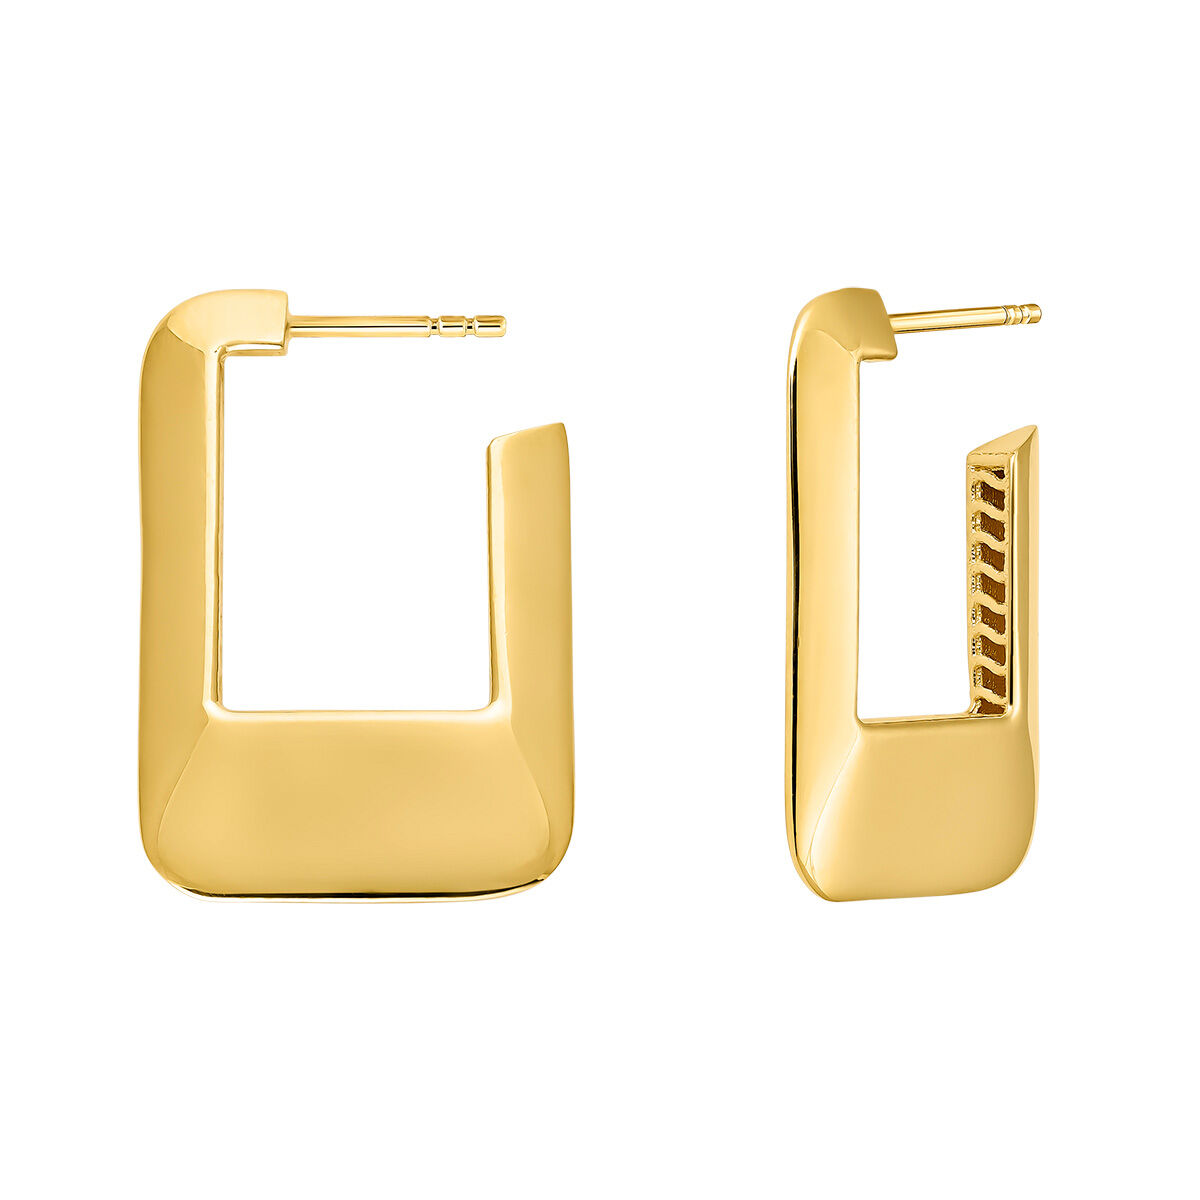 Square hoop earrings in 18k gold-plated silver, J05142-02, hi-res